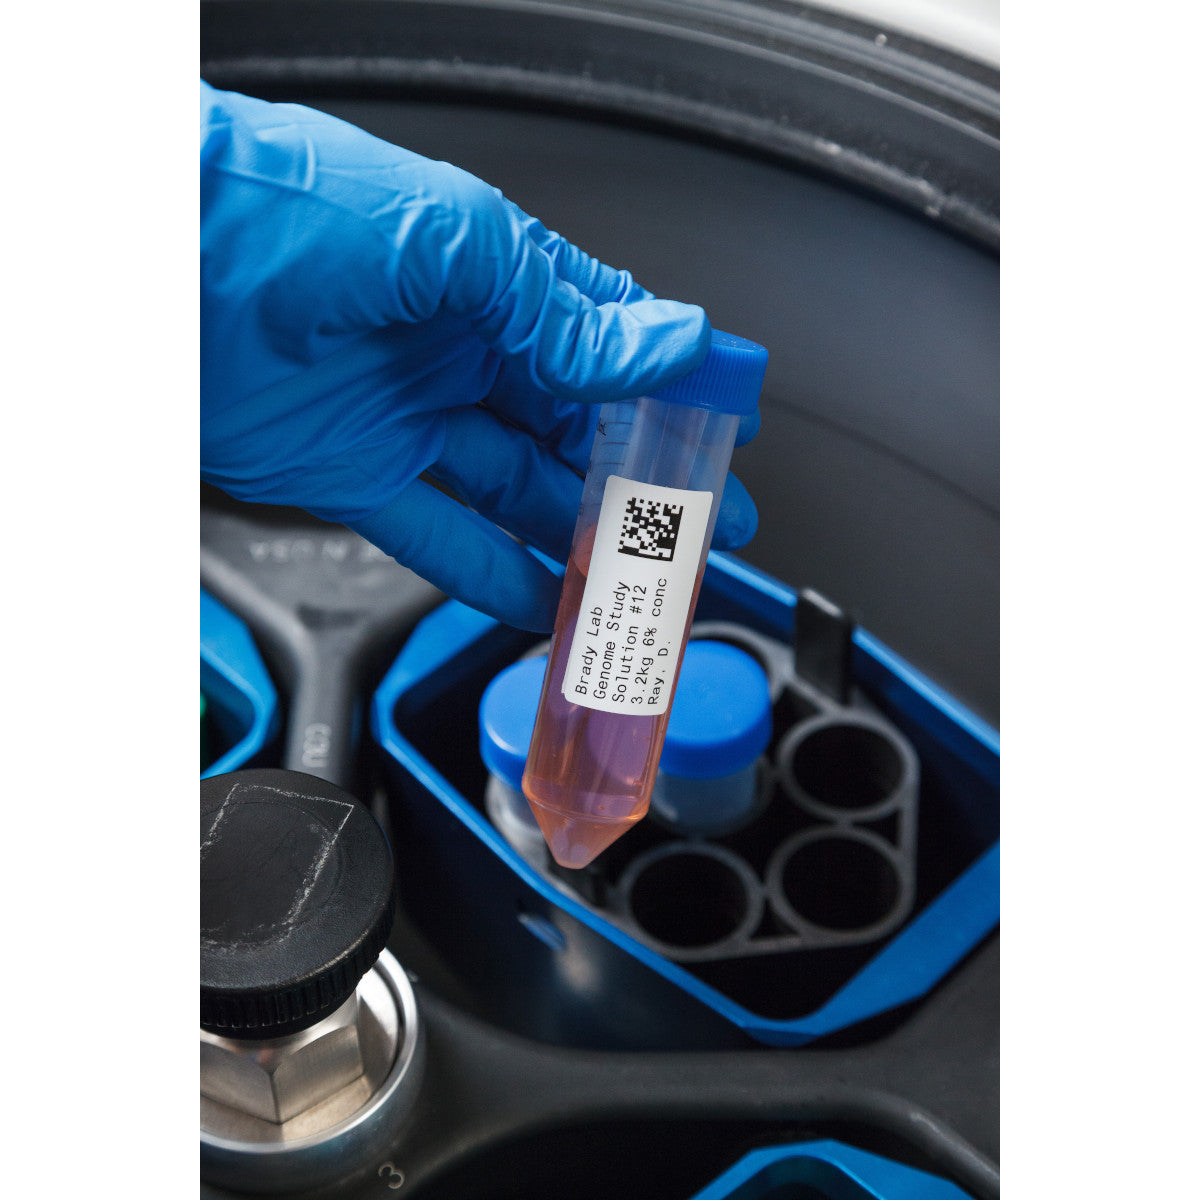 011264 - Etichette per criogenia e autoclave in poliestere core 76 mm ROTOLO DA 3000 ETICHETTE